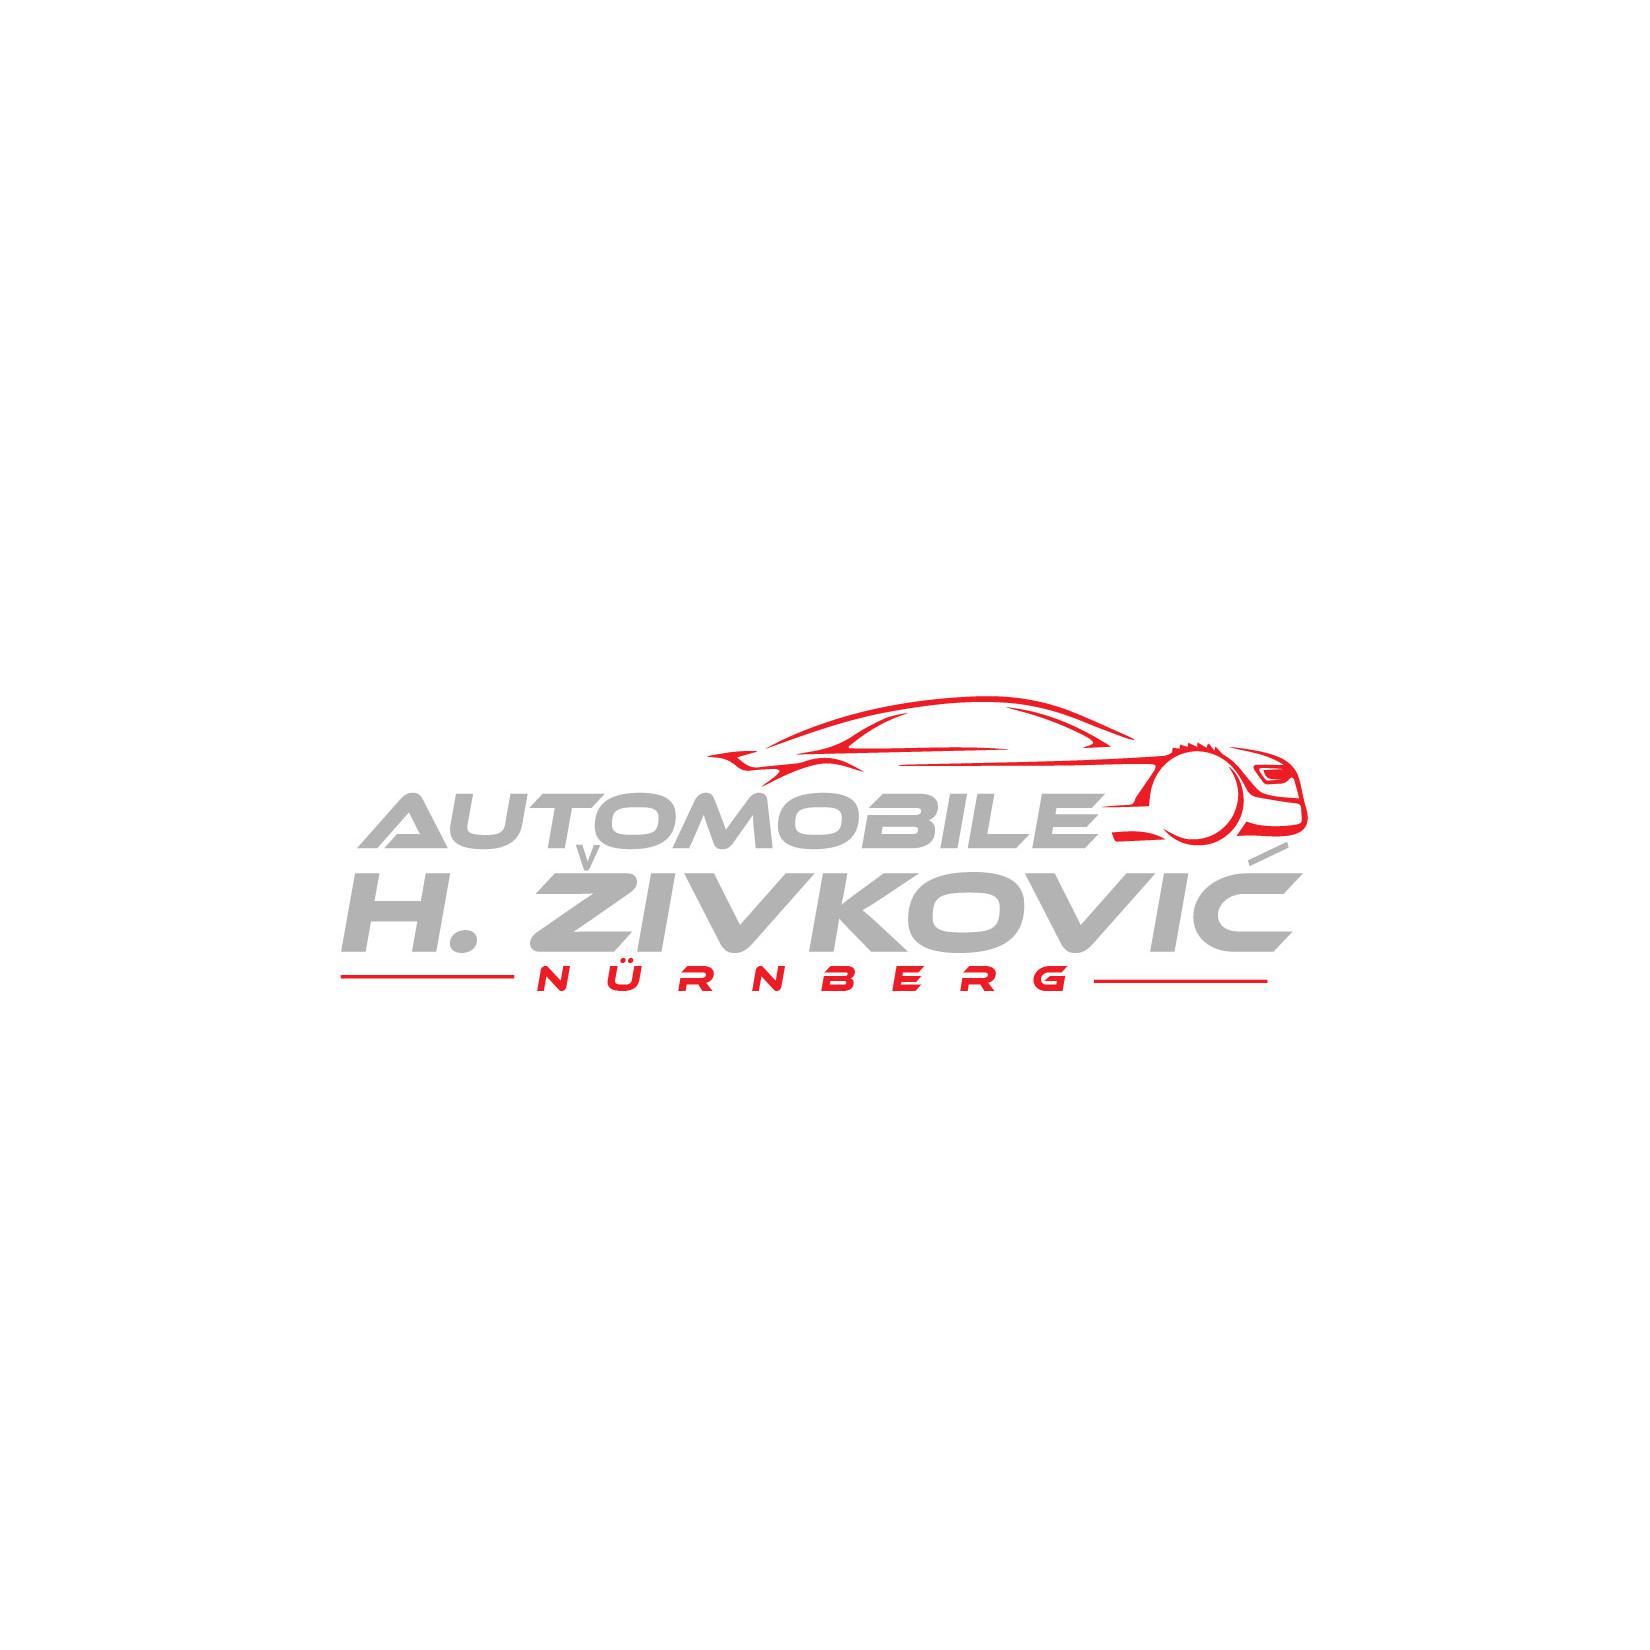 Logo von Automobile H. Zivkovic